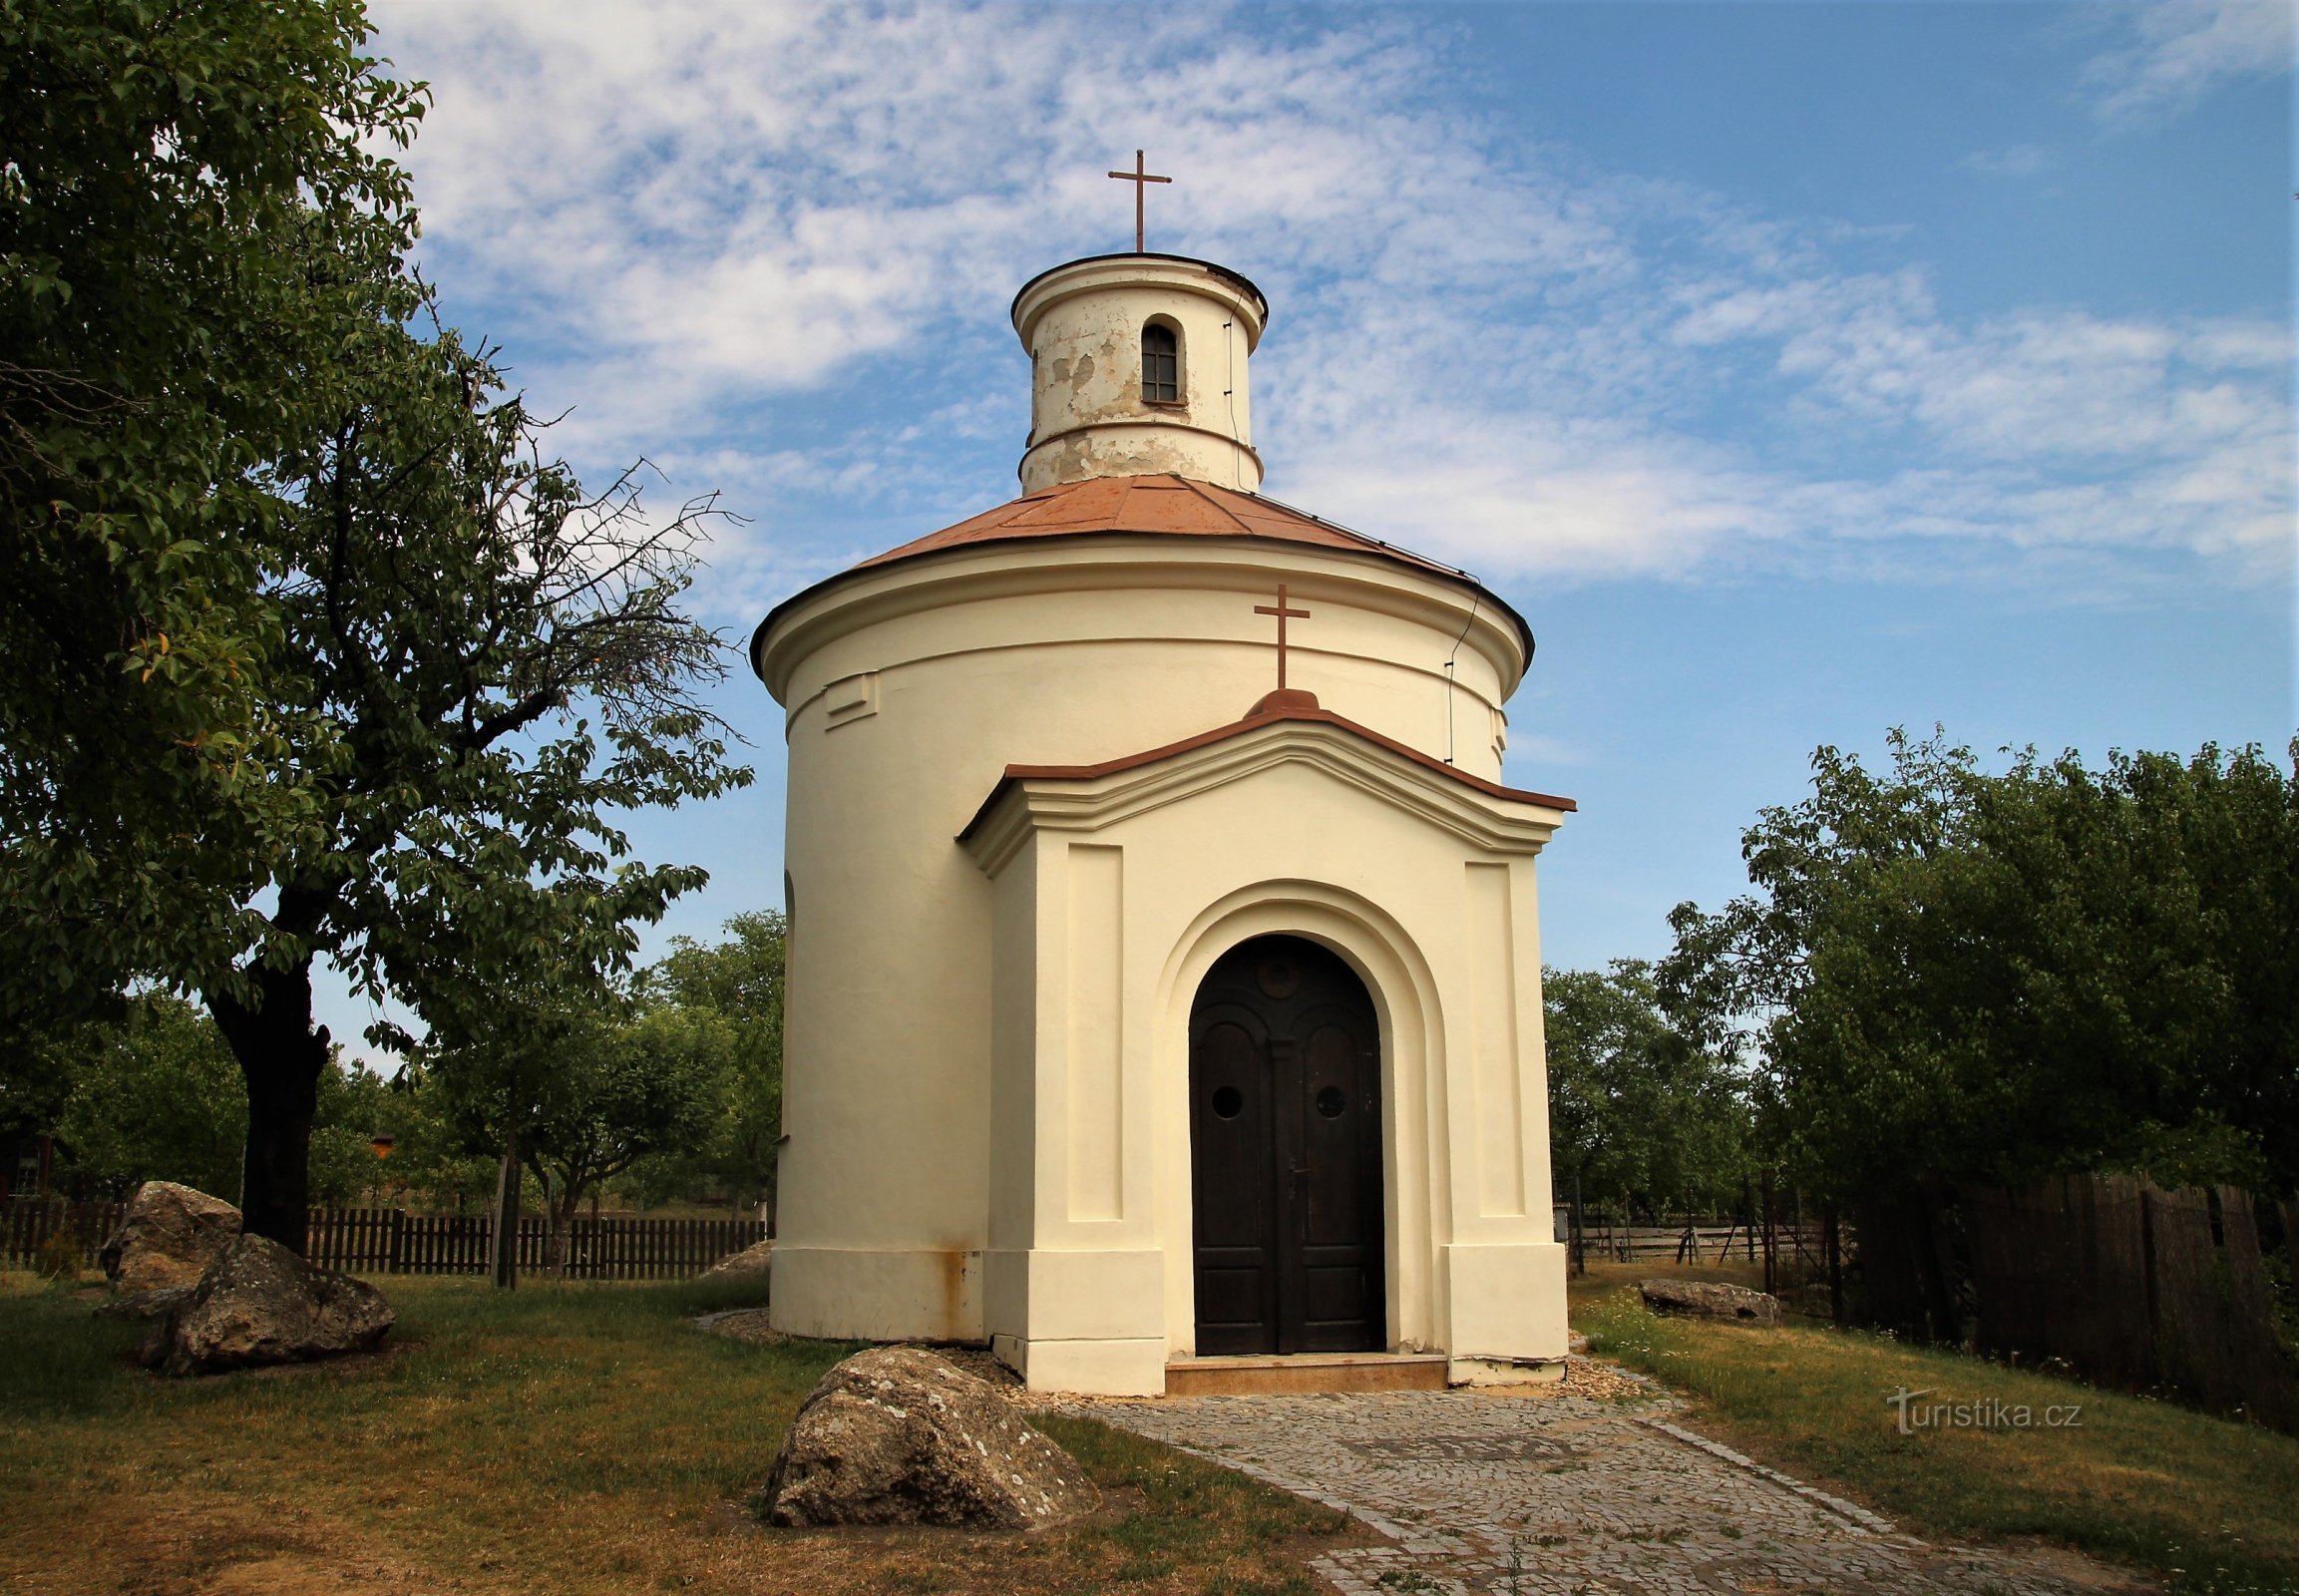 Újezd ​​near Brno - chapel of St. Anthony of Padua